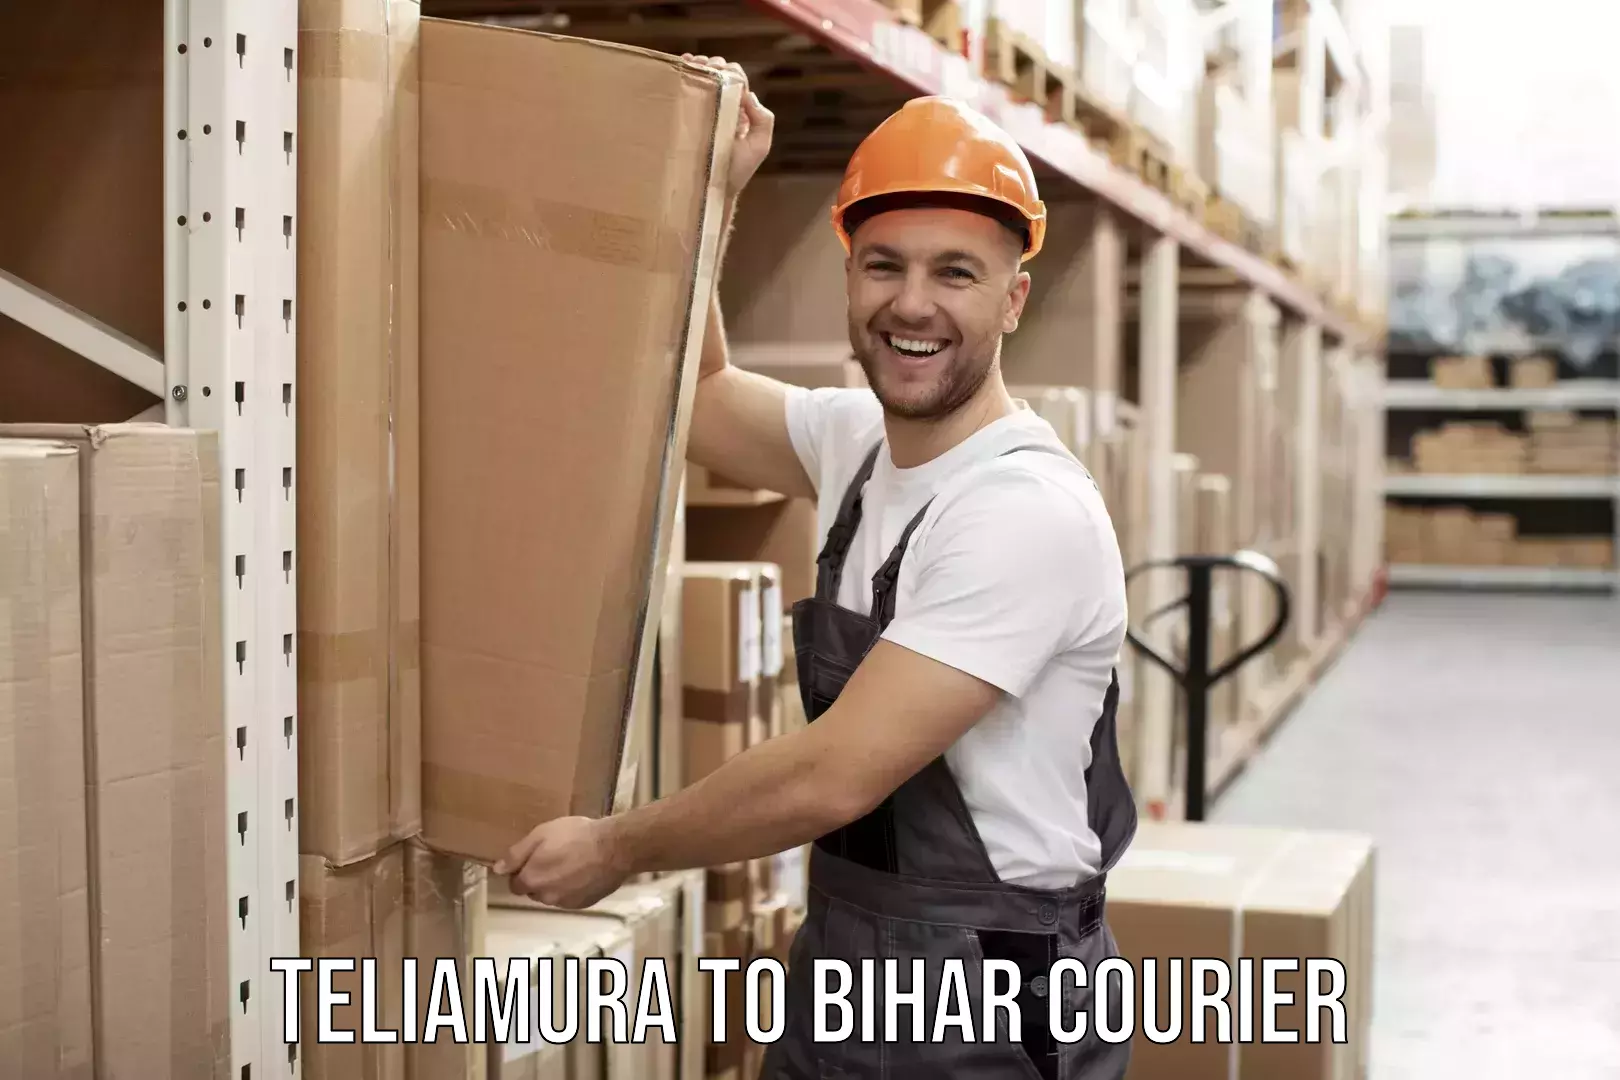 Furniture delivery service Teliamura to Rusera